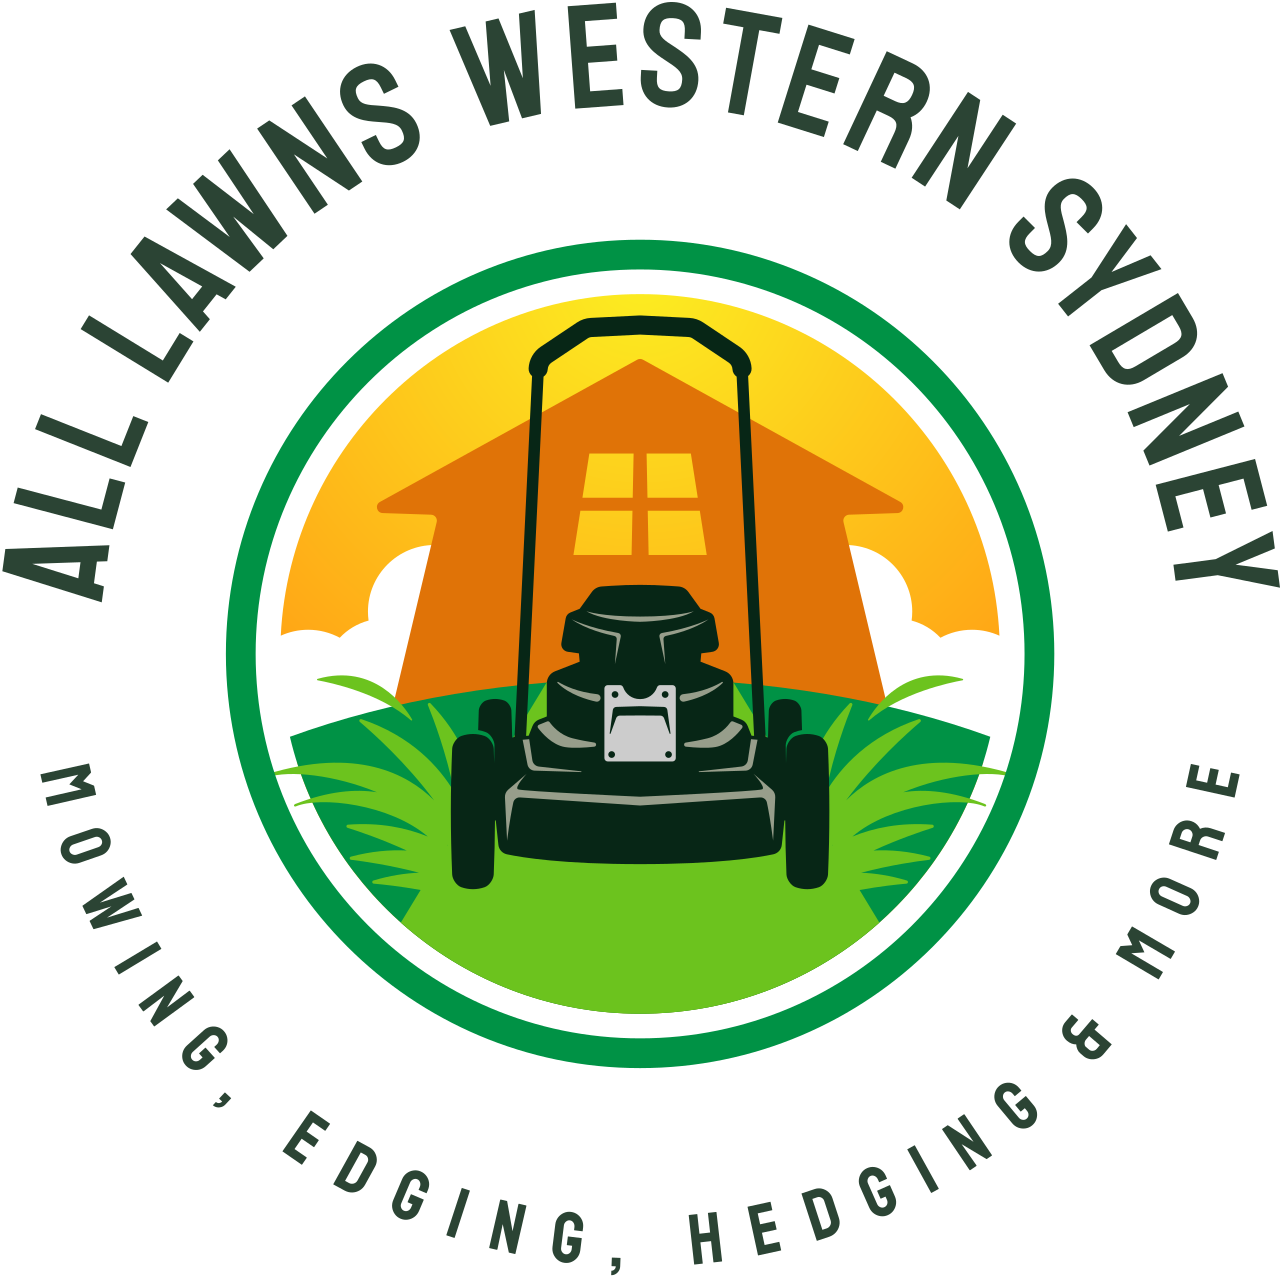 All lawns western sydney's logo